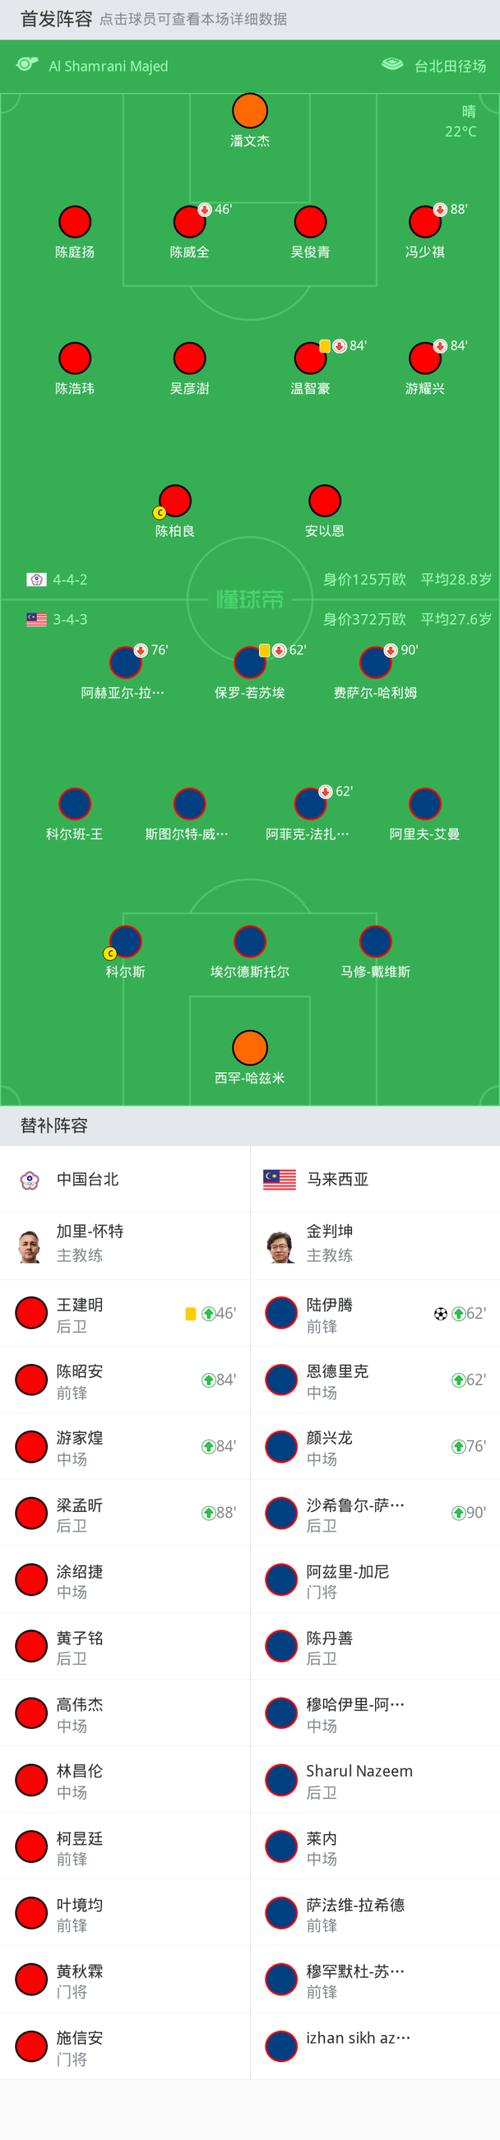 亚预赛中国vs台北比分预测的相关图片